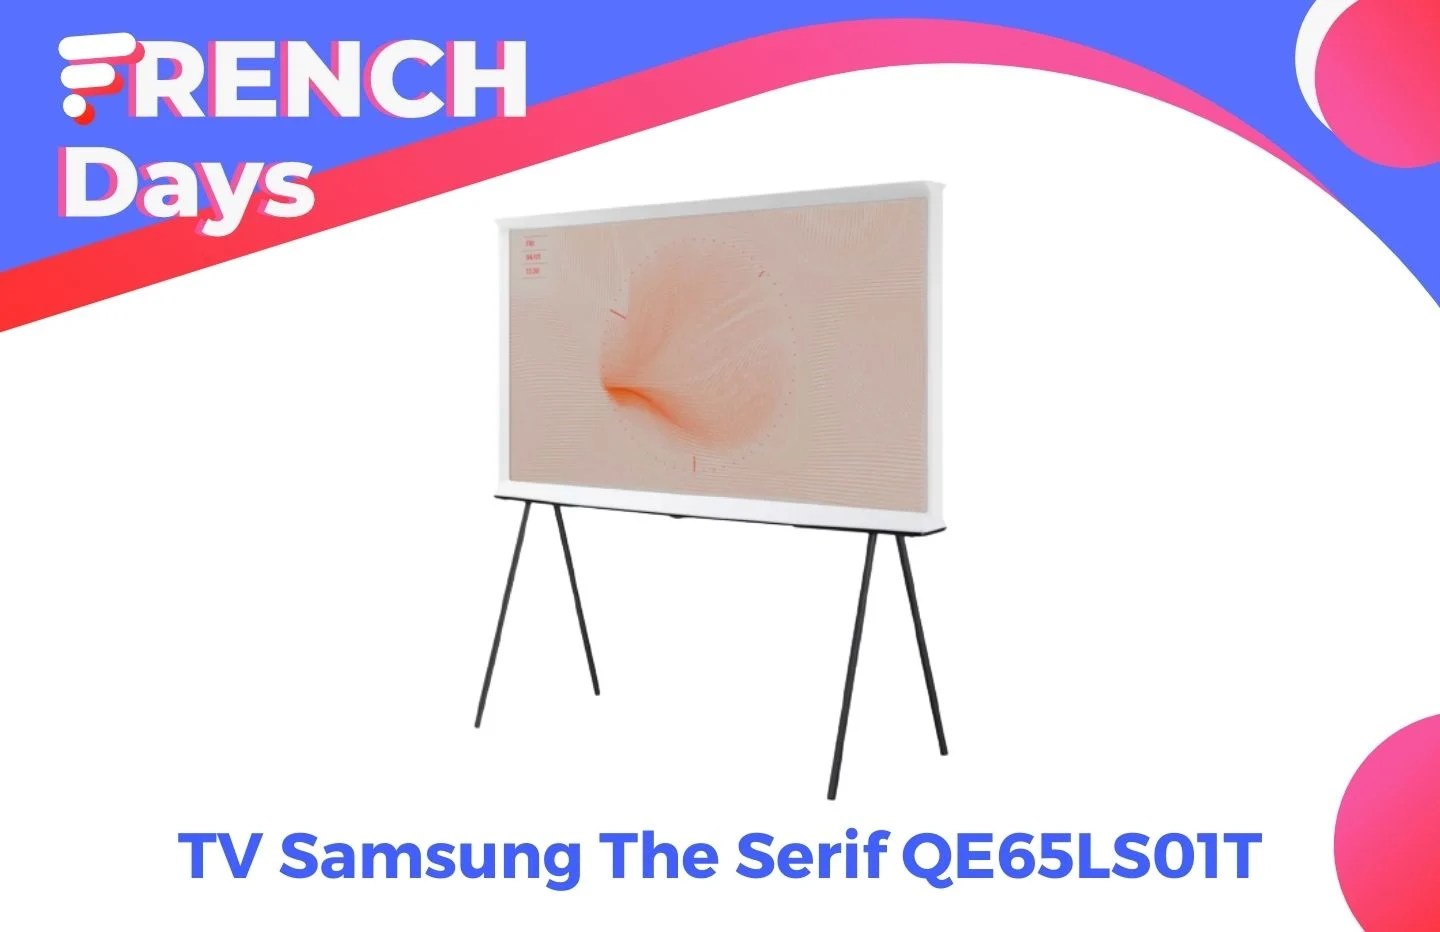 Samsung The Serif : ce TV atypique de 65″ coûte 1 000 € de moins pour les French Days